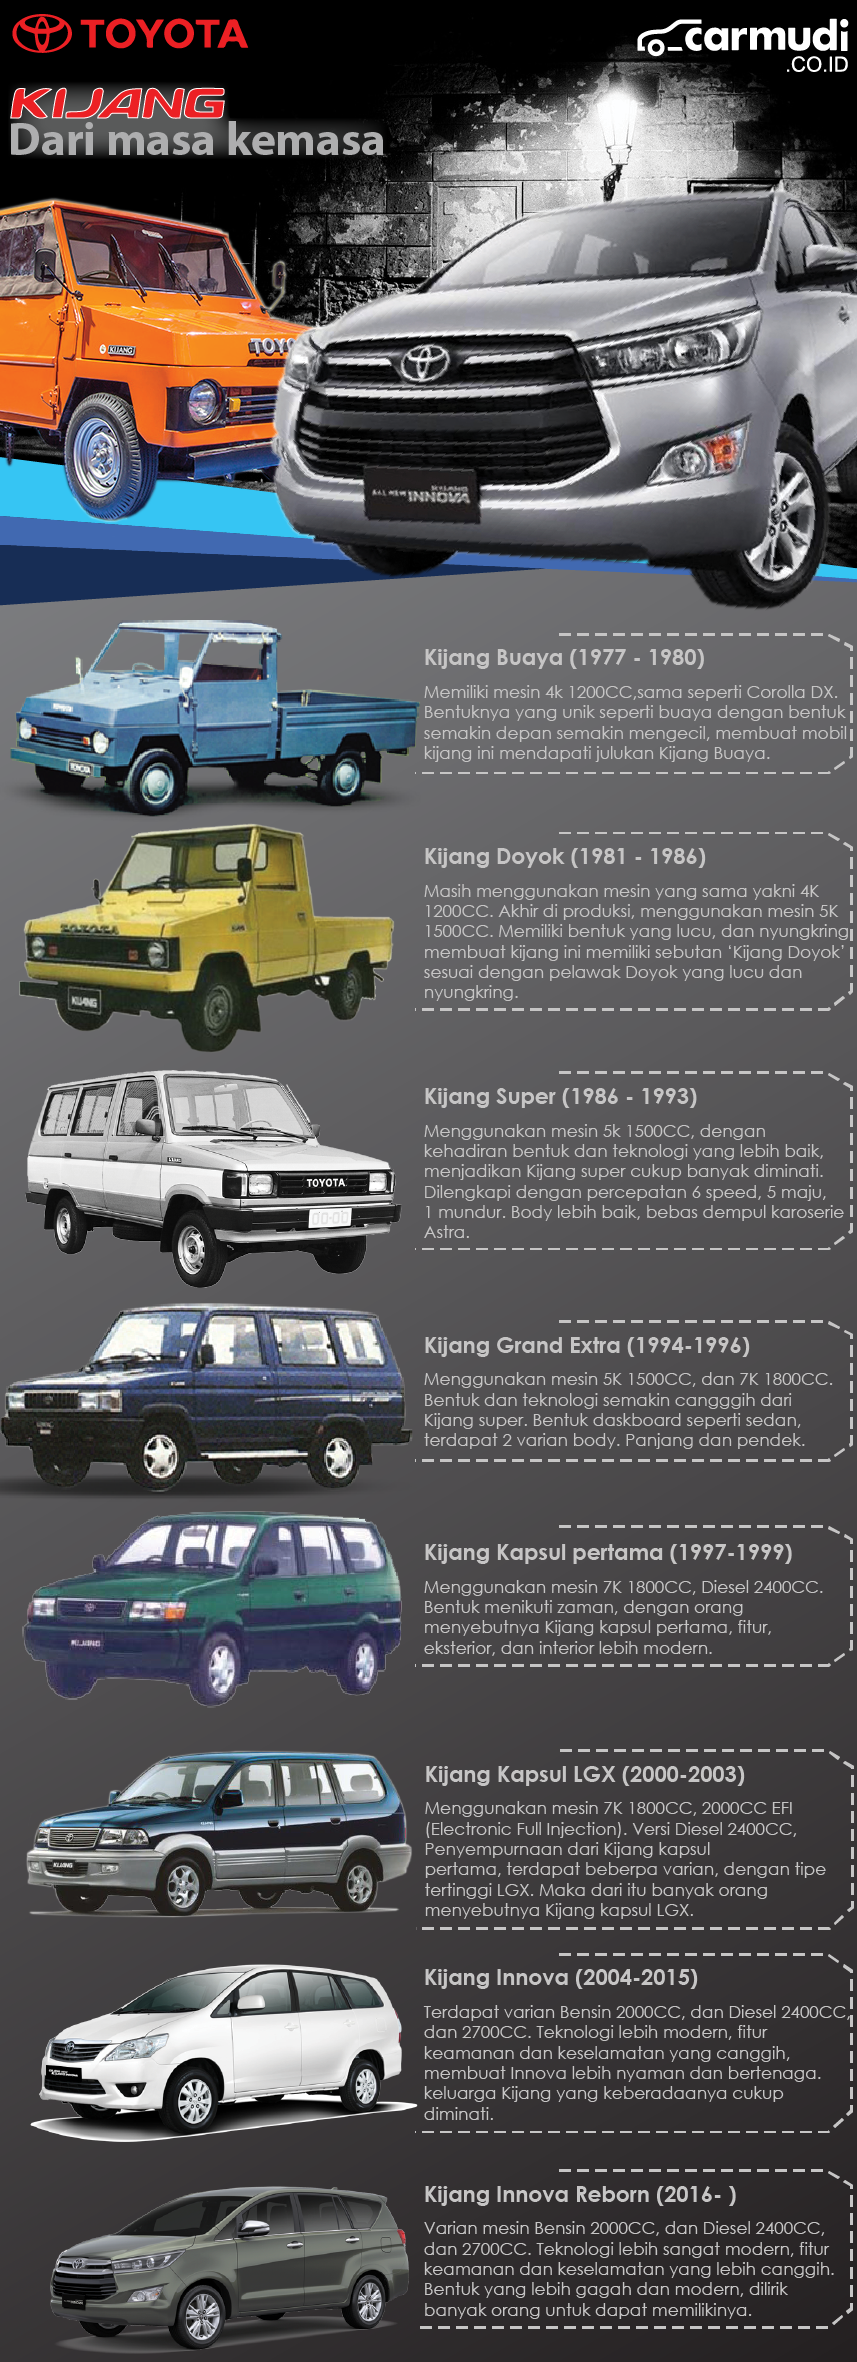 Generasi Toyota Kijang Dalam Infografis